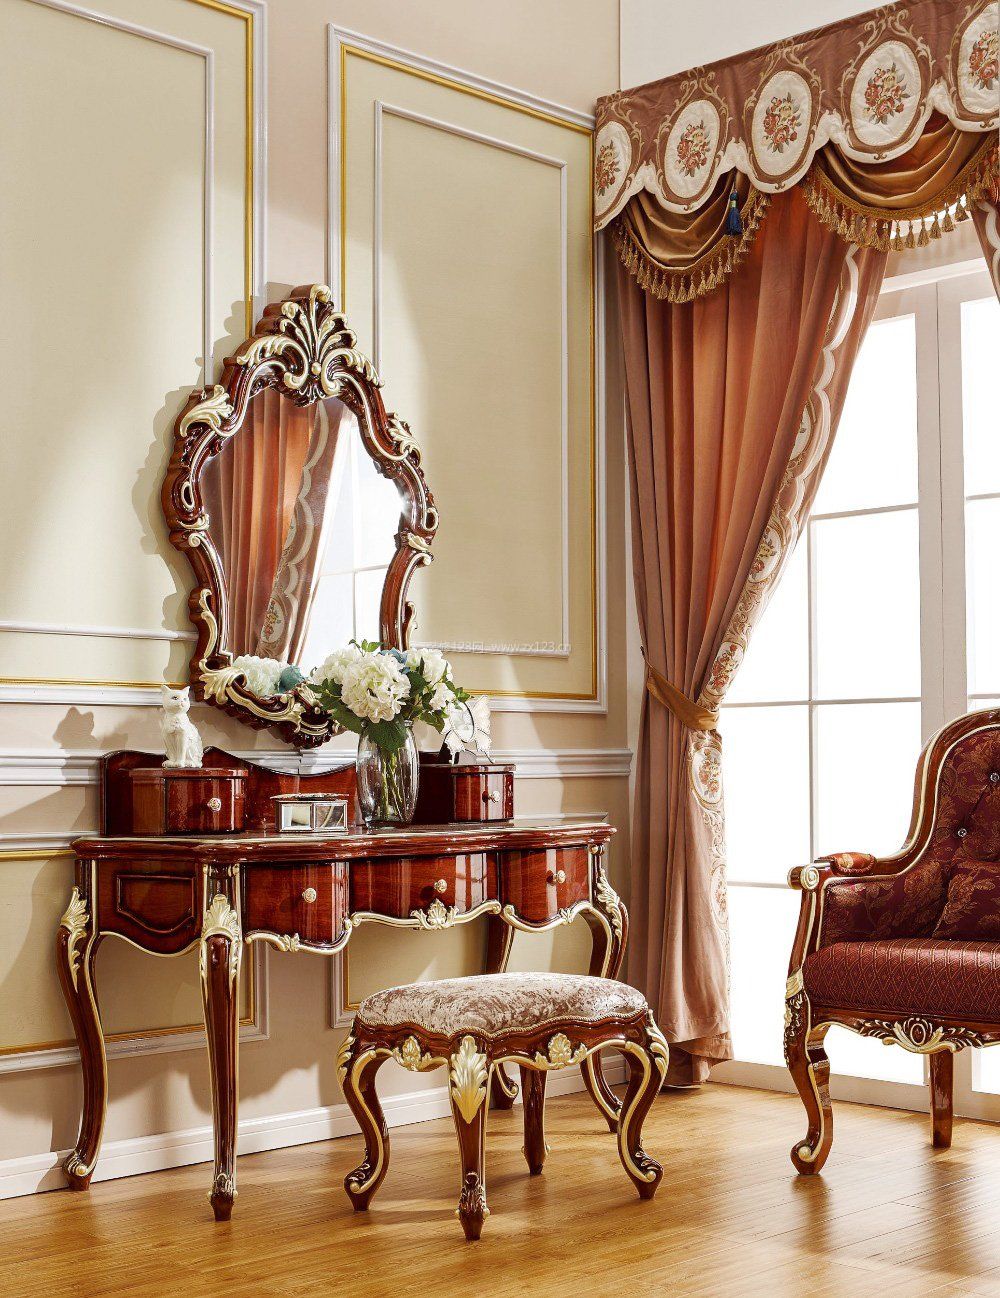 欧式古典家具卧室梳妆台